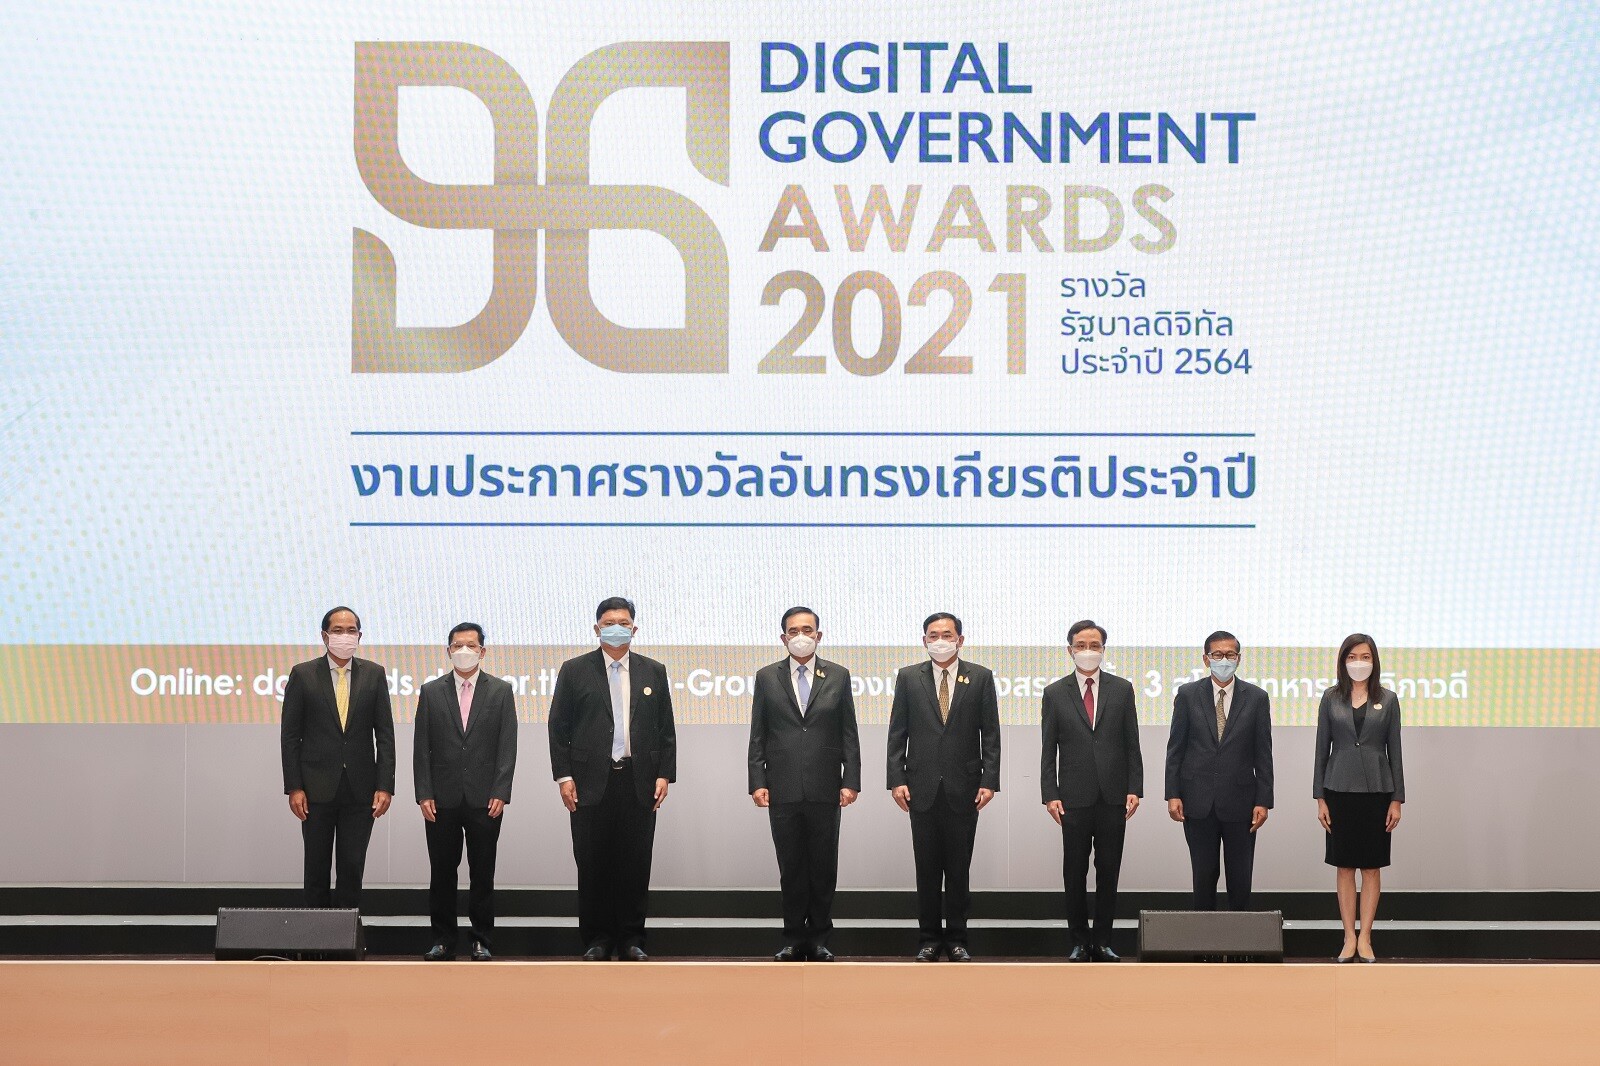 นายกรัฐมนตรีมอบรางวัลรัฐบาลดิจิทัลประจำปี 2564 "Digital Government Awards 2021" ย้ำ 3 แนวทางสำคัญมุ่งพัฒนารัฐบาลดิจิทัลด้าน 'ข้อมูล แพลตฟอร์มกลาง พัฒนาบุคลากรภาครัฐ' อำนวยความสะดวกประชาชนเข้าถึงบริการภาครัฐแบบครบวงจรในอนาคต